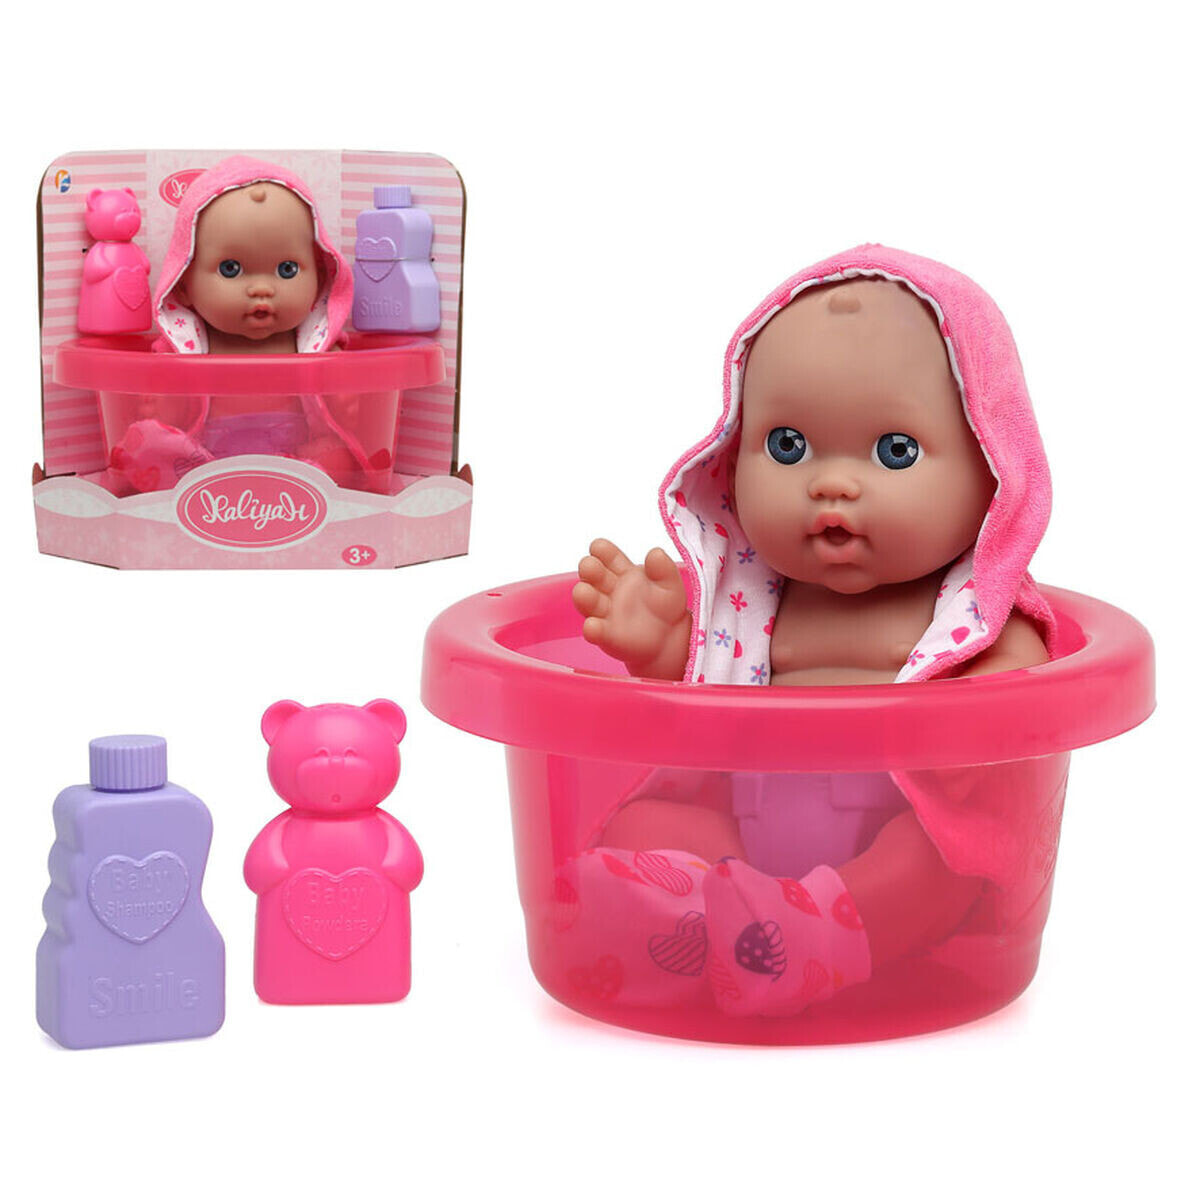 Baby doll Bath and Bathrobe